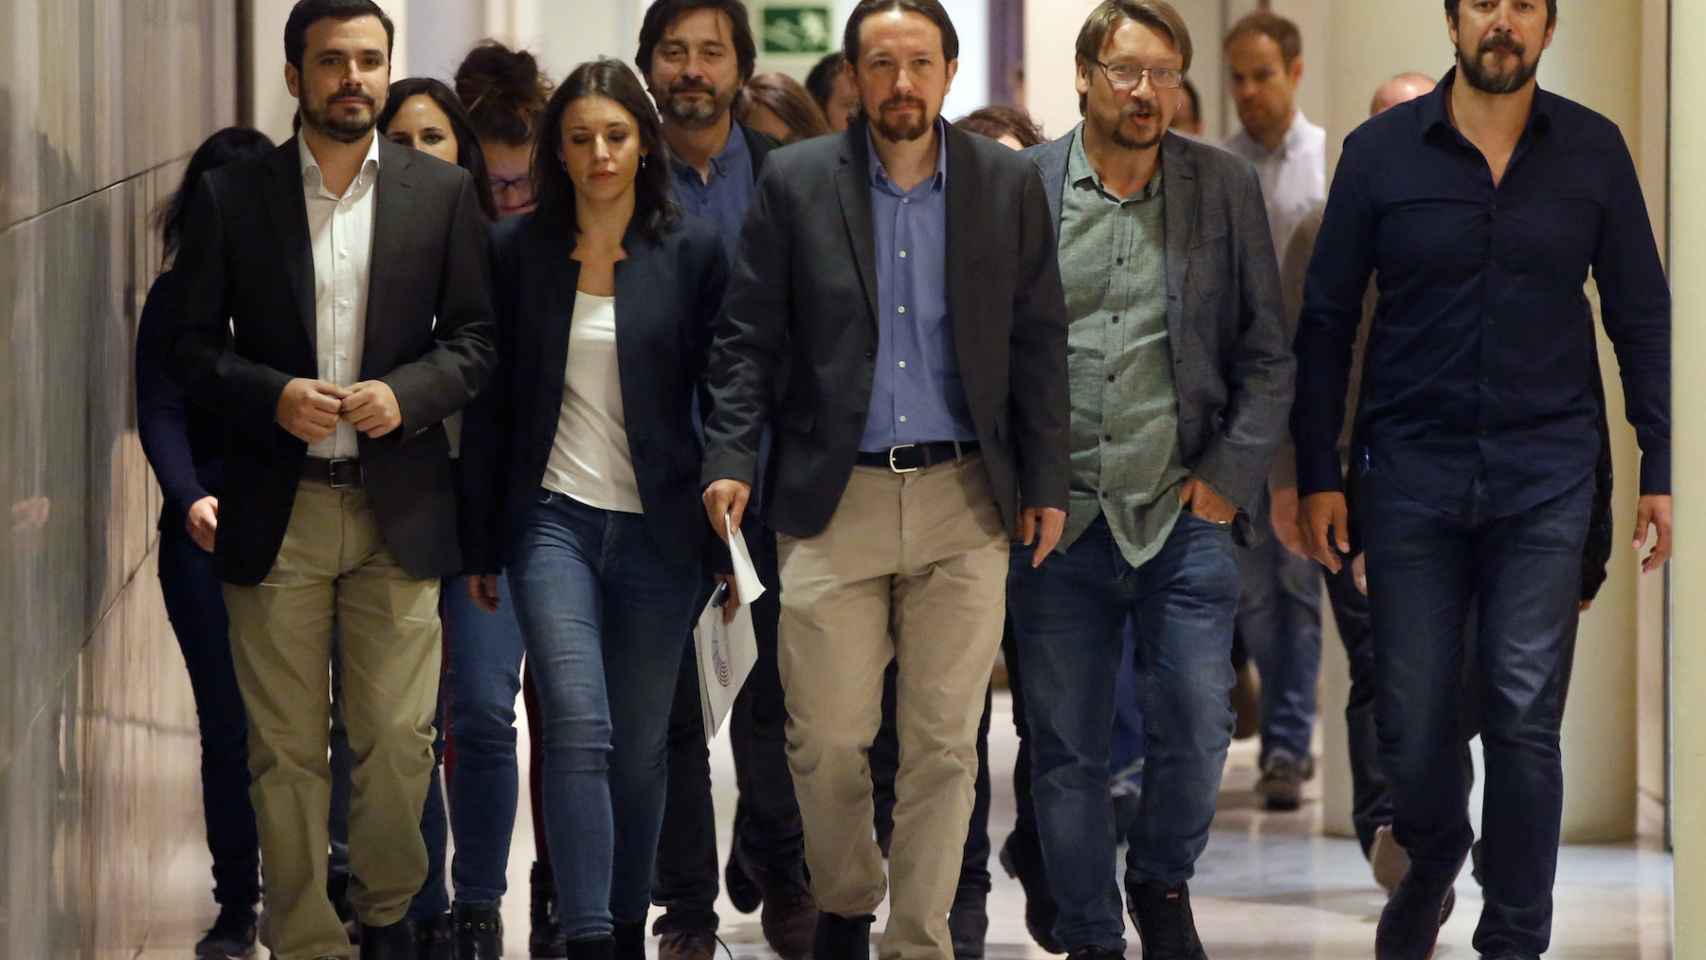 Pablo Iglesias y su equipo, llegando a la sala de prensa del Congreso de los Diputados.